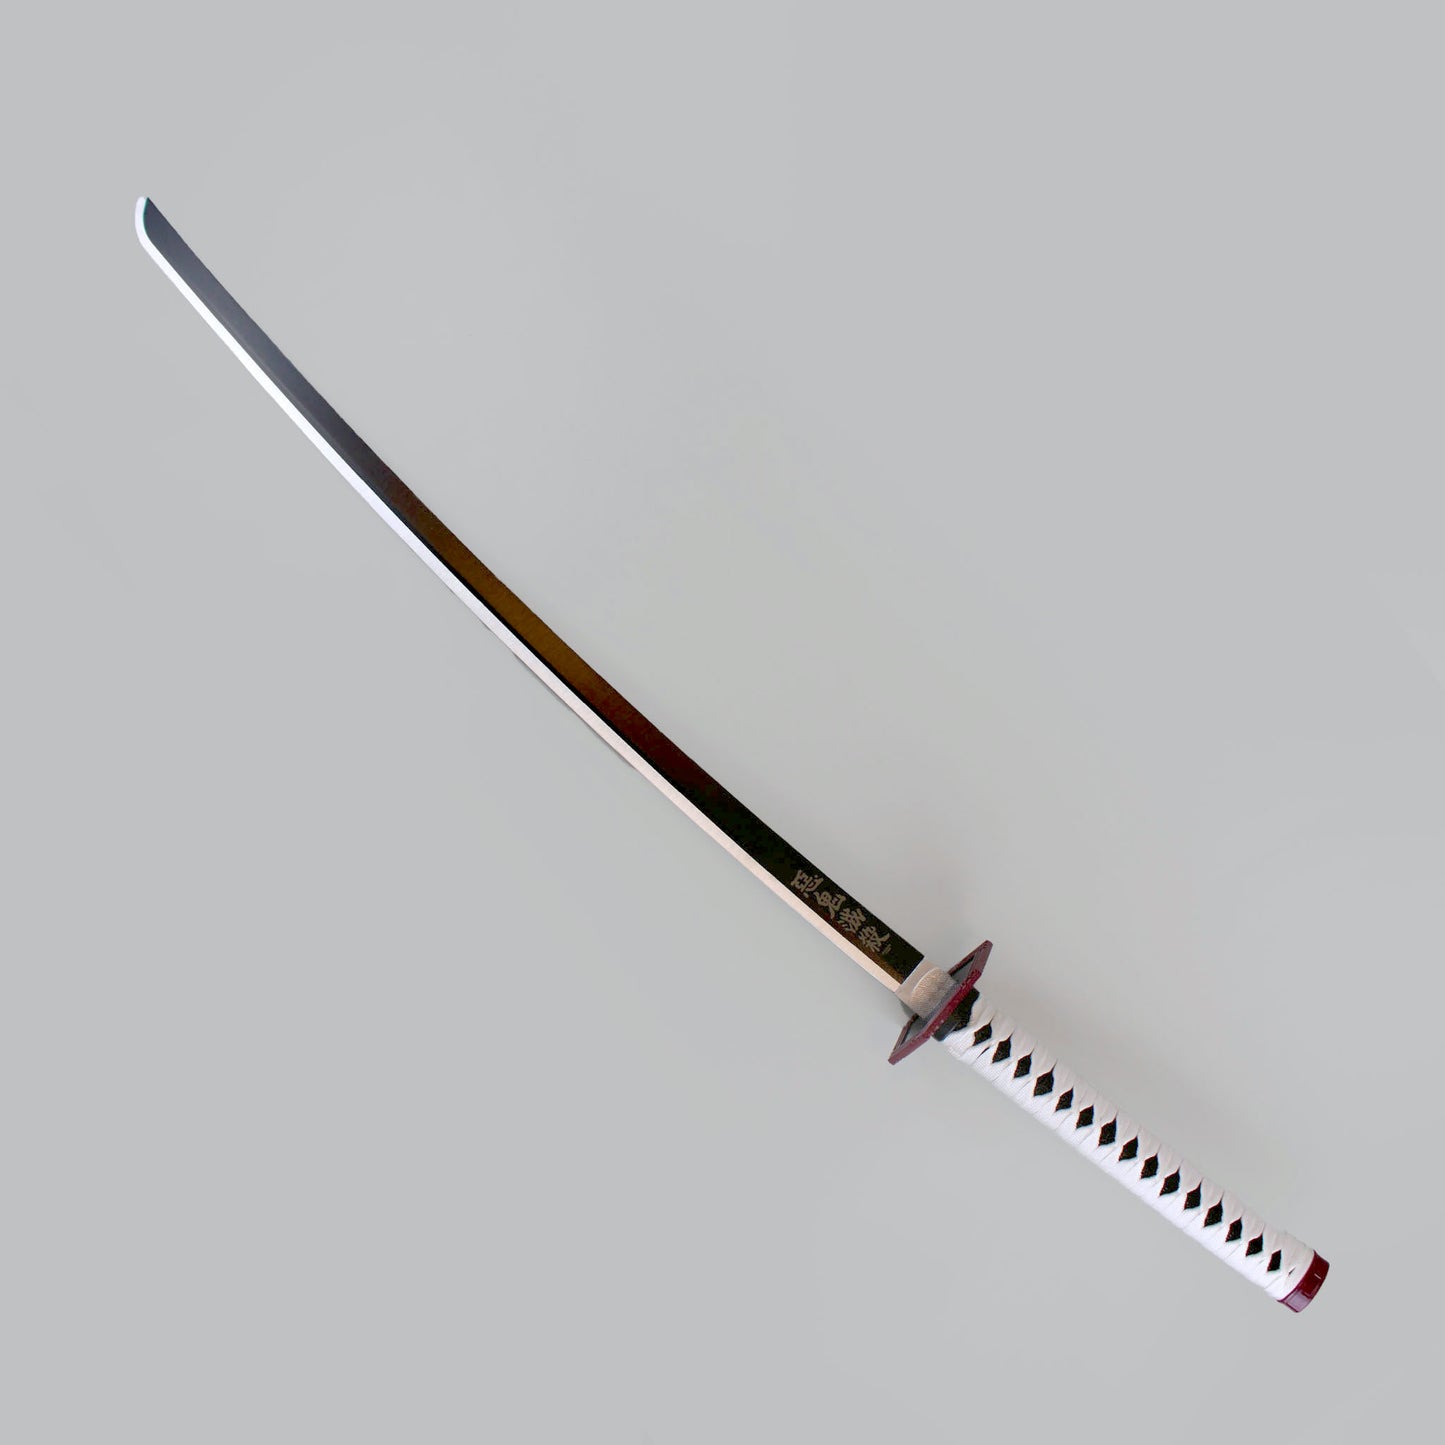 Giyu Tomioka Demon Slayer Sword And Scabbard - Anime, Carbon Steel Blade,  Cord-Wrapped Handle